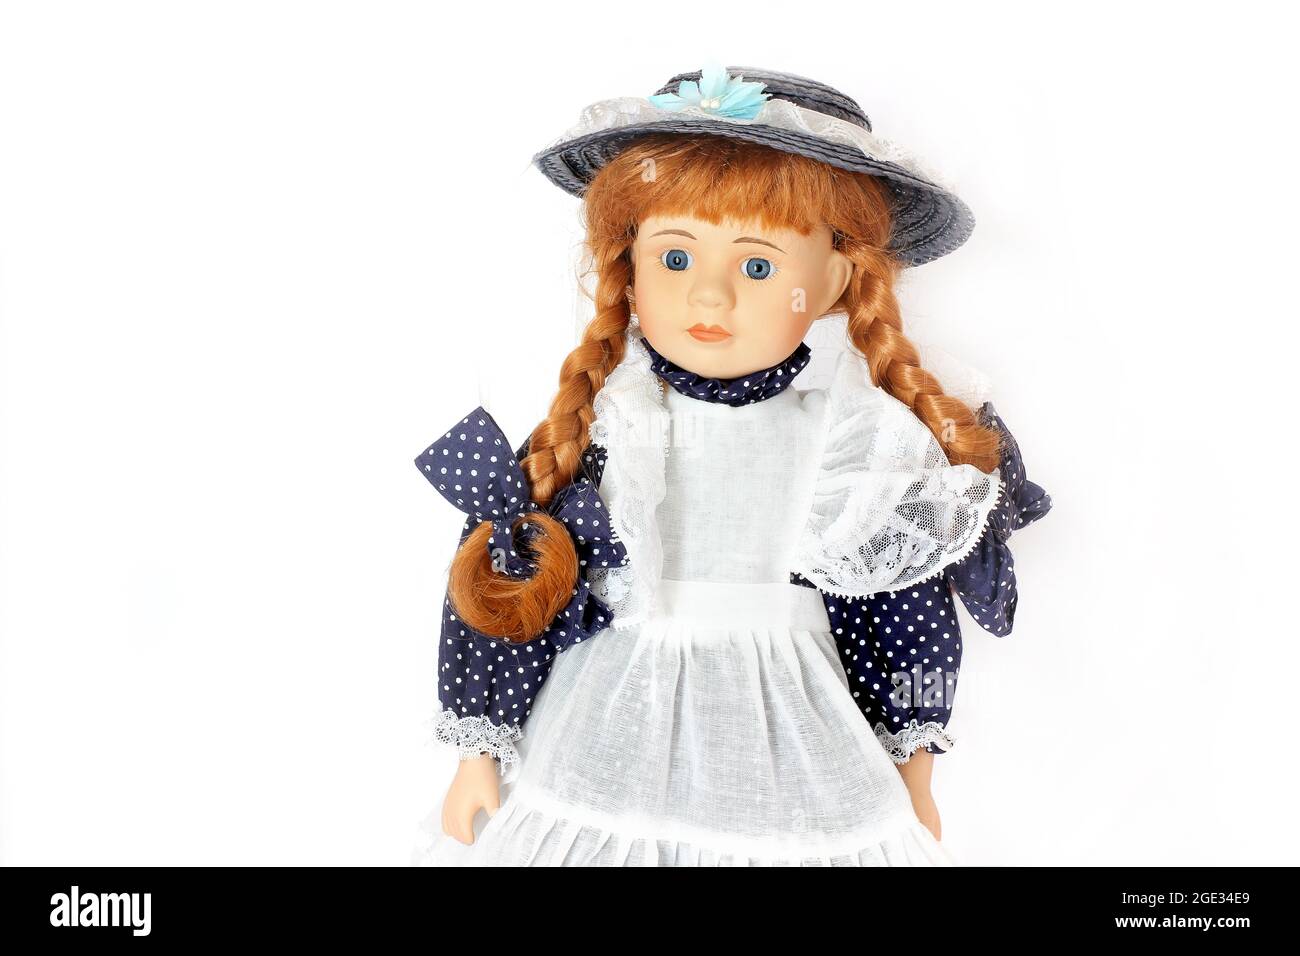 Wunderschöne Puppe. Puppe in einem blauen Kleid mit Schürze Stockfoto